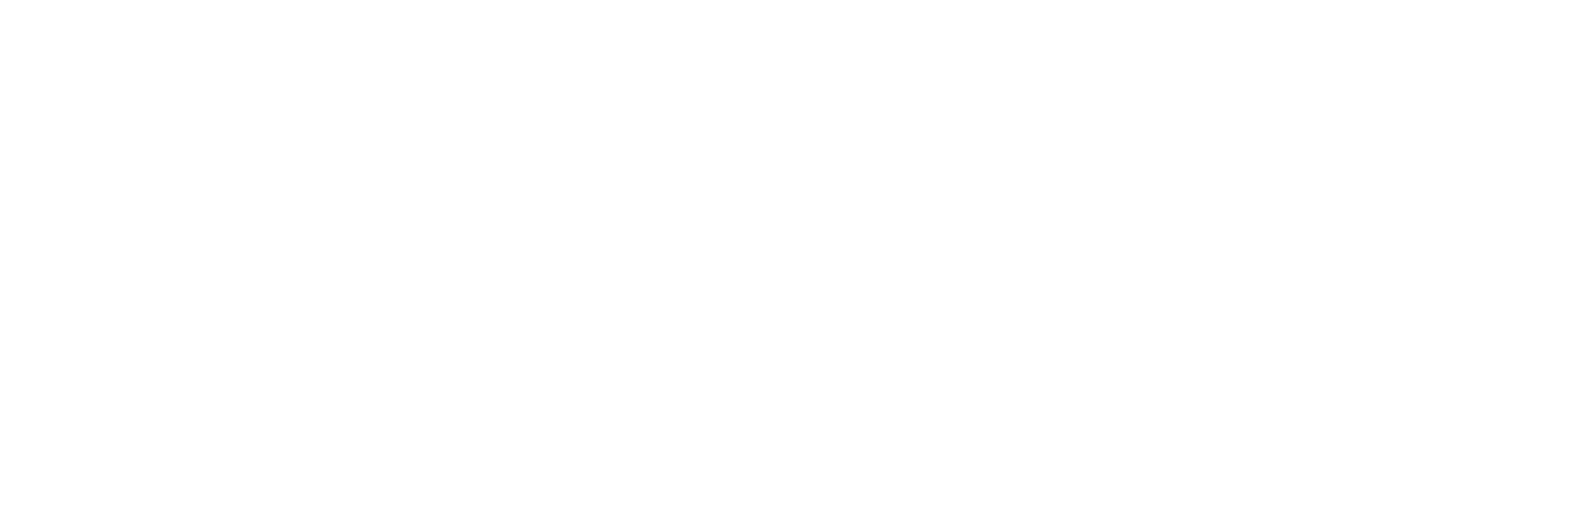 Weathernews Inc. logo large for dark backgrounds (transparent PNG)